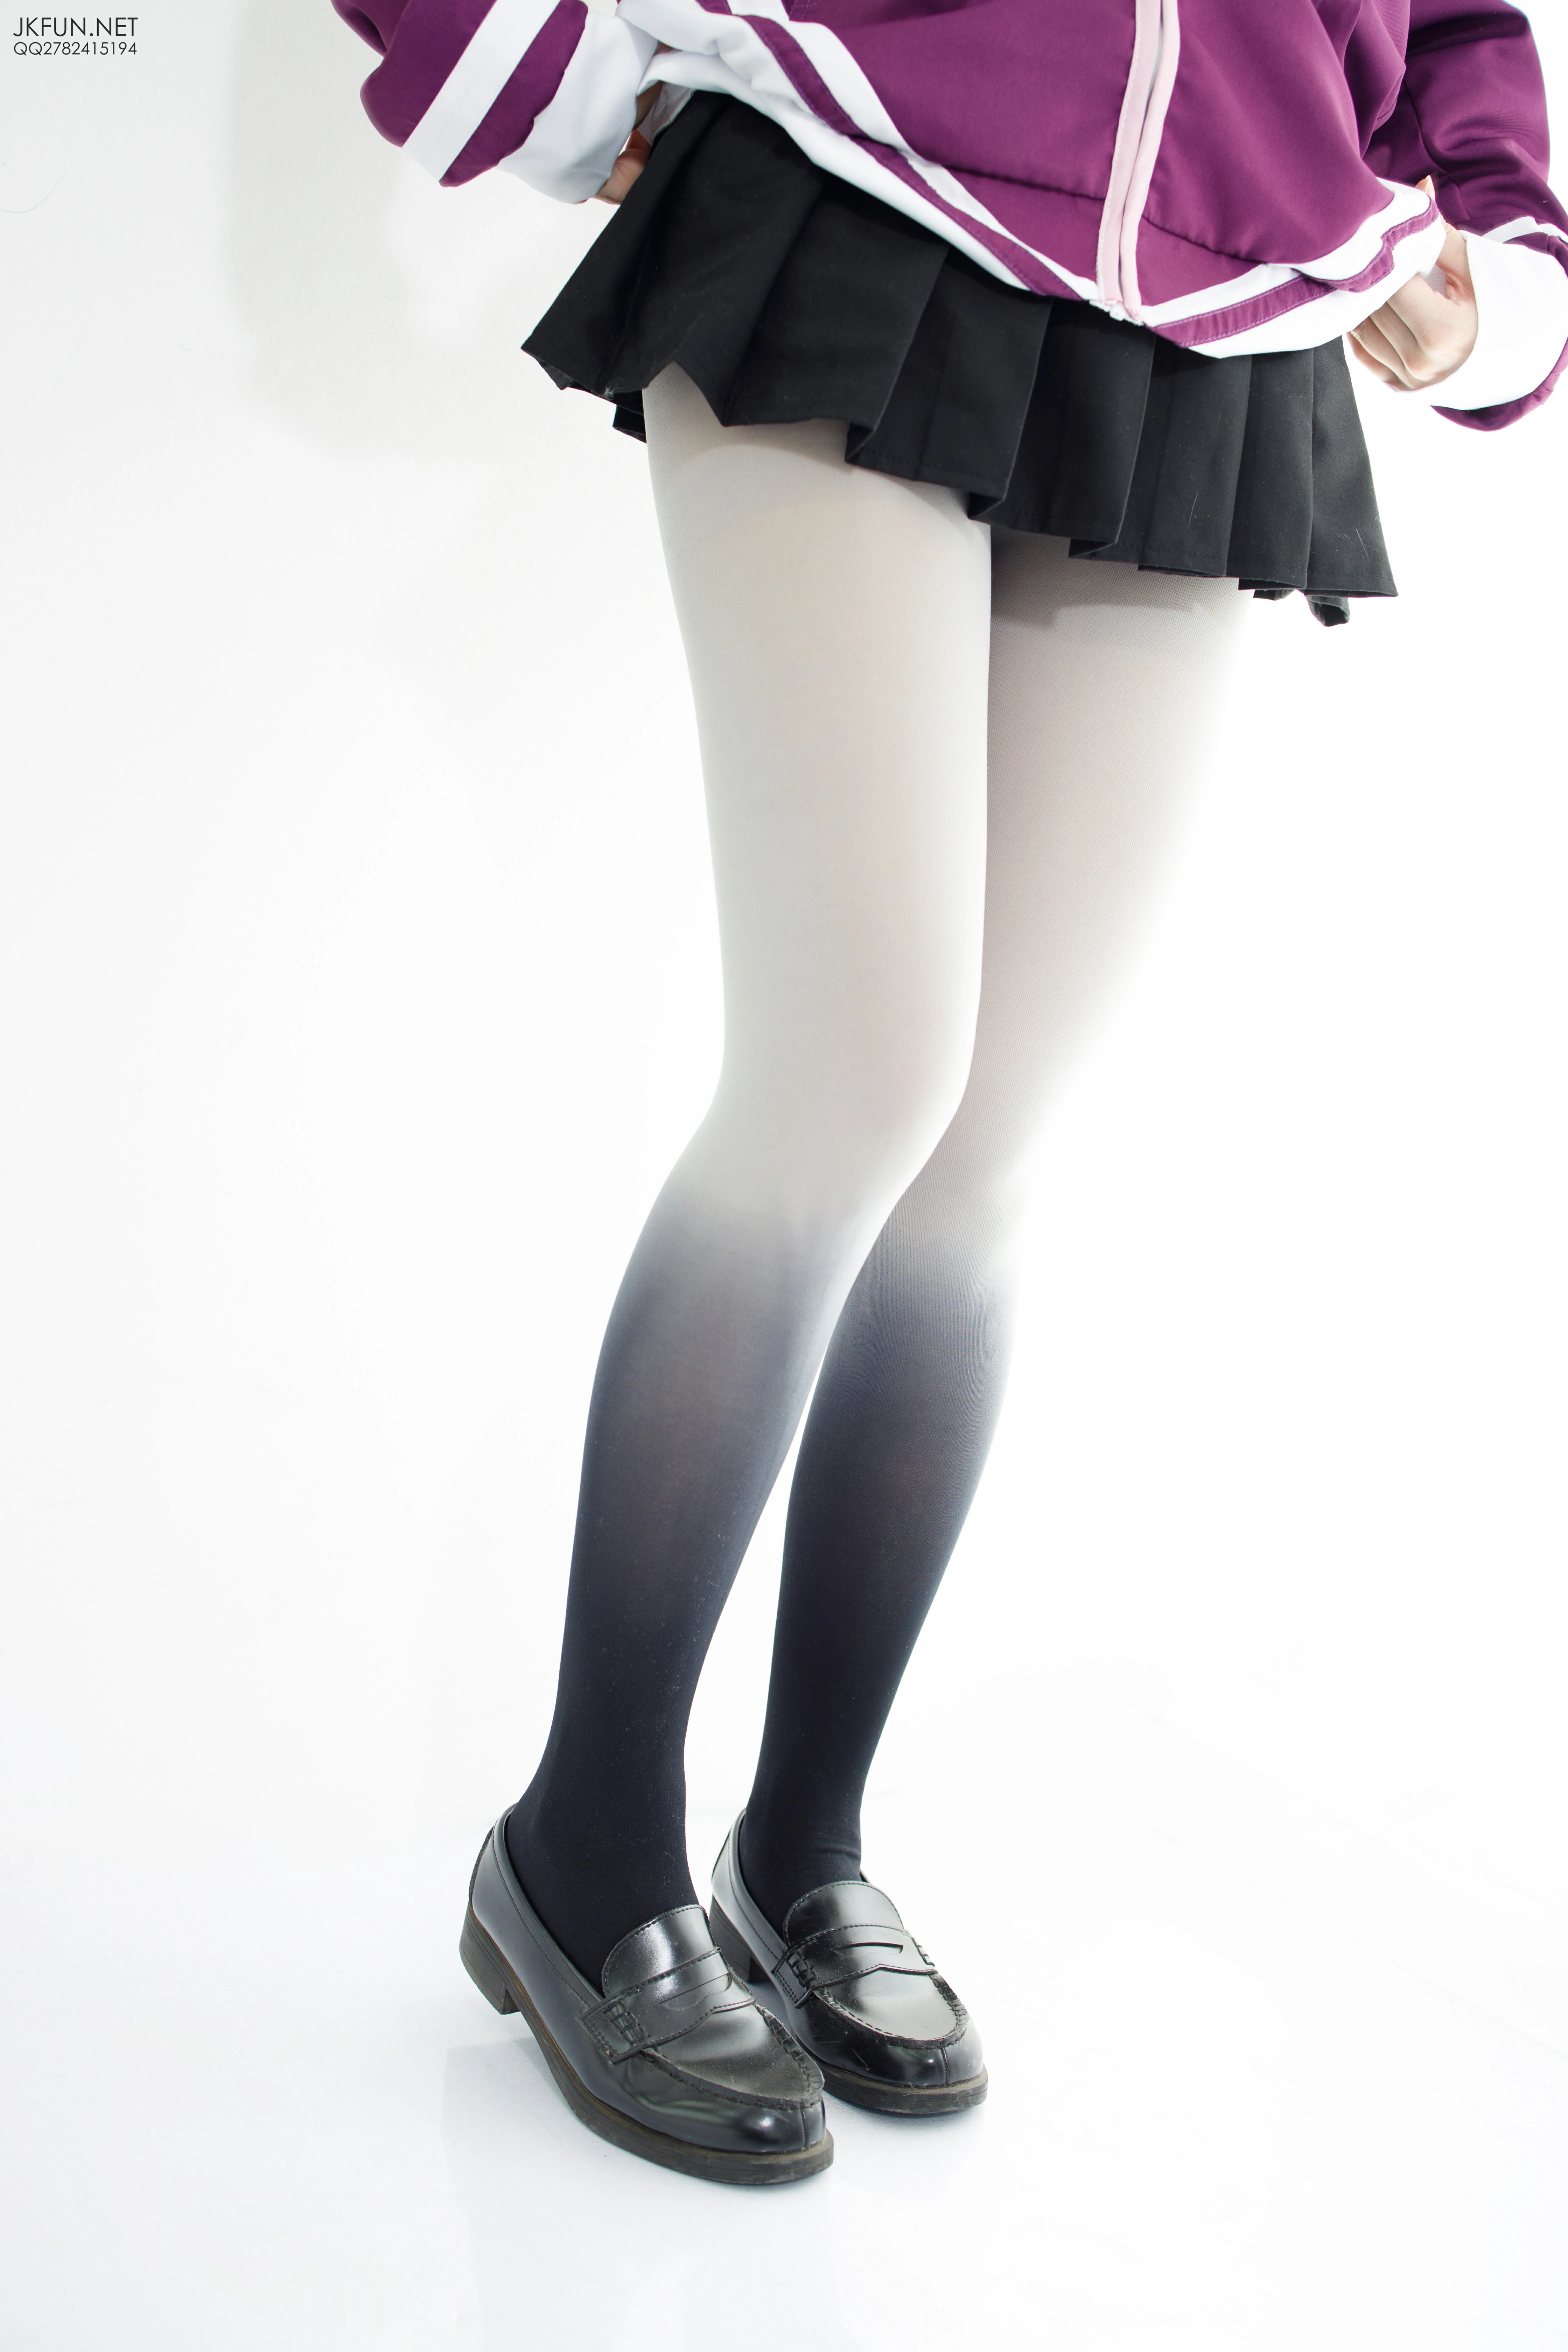 [森萝财团]JKFUN-004 爱玩COSPLAYER的小女生 雪晴 情趣高中女生制服与短裙加丝袜美腿性感私房写真集,